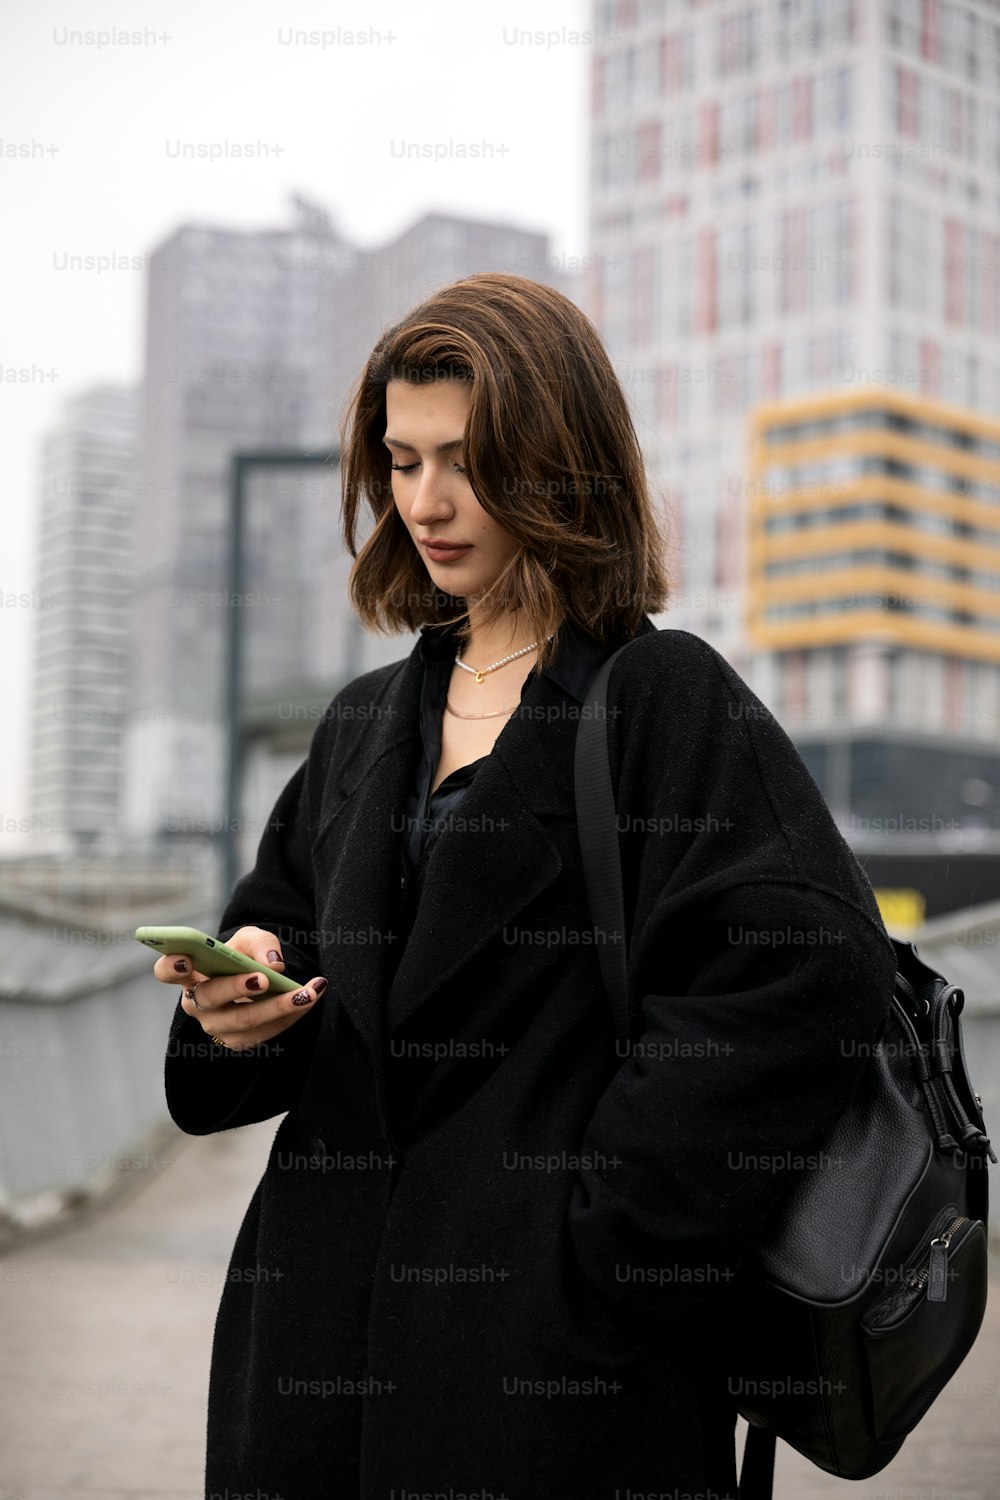 Una mujer con un abrigo negro mirando su teléfono celular